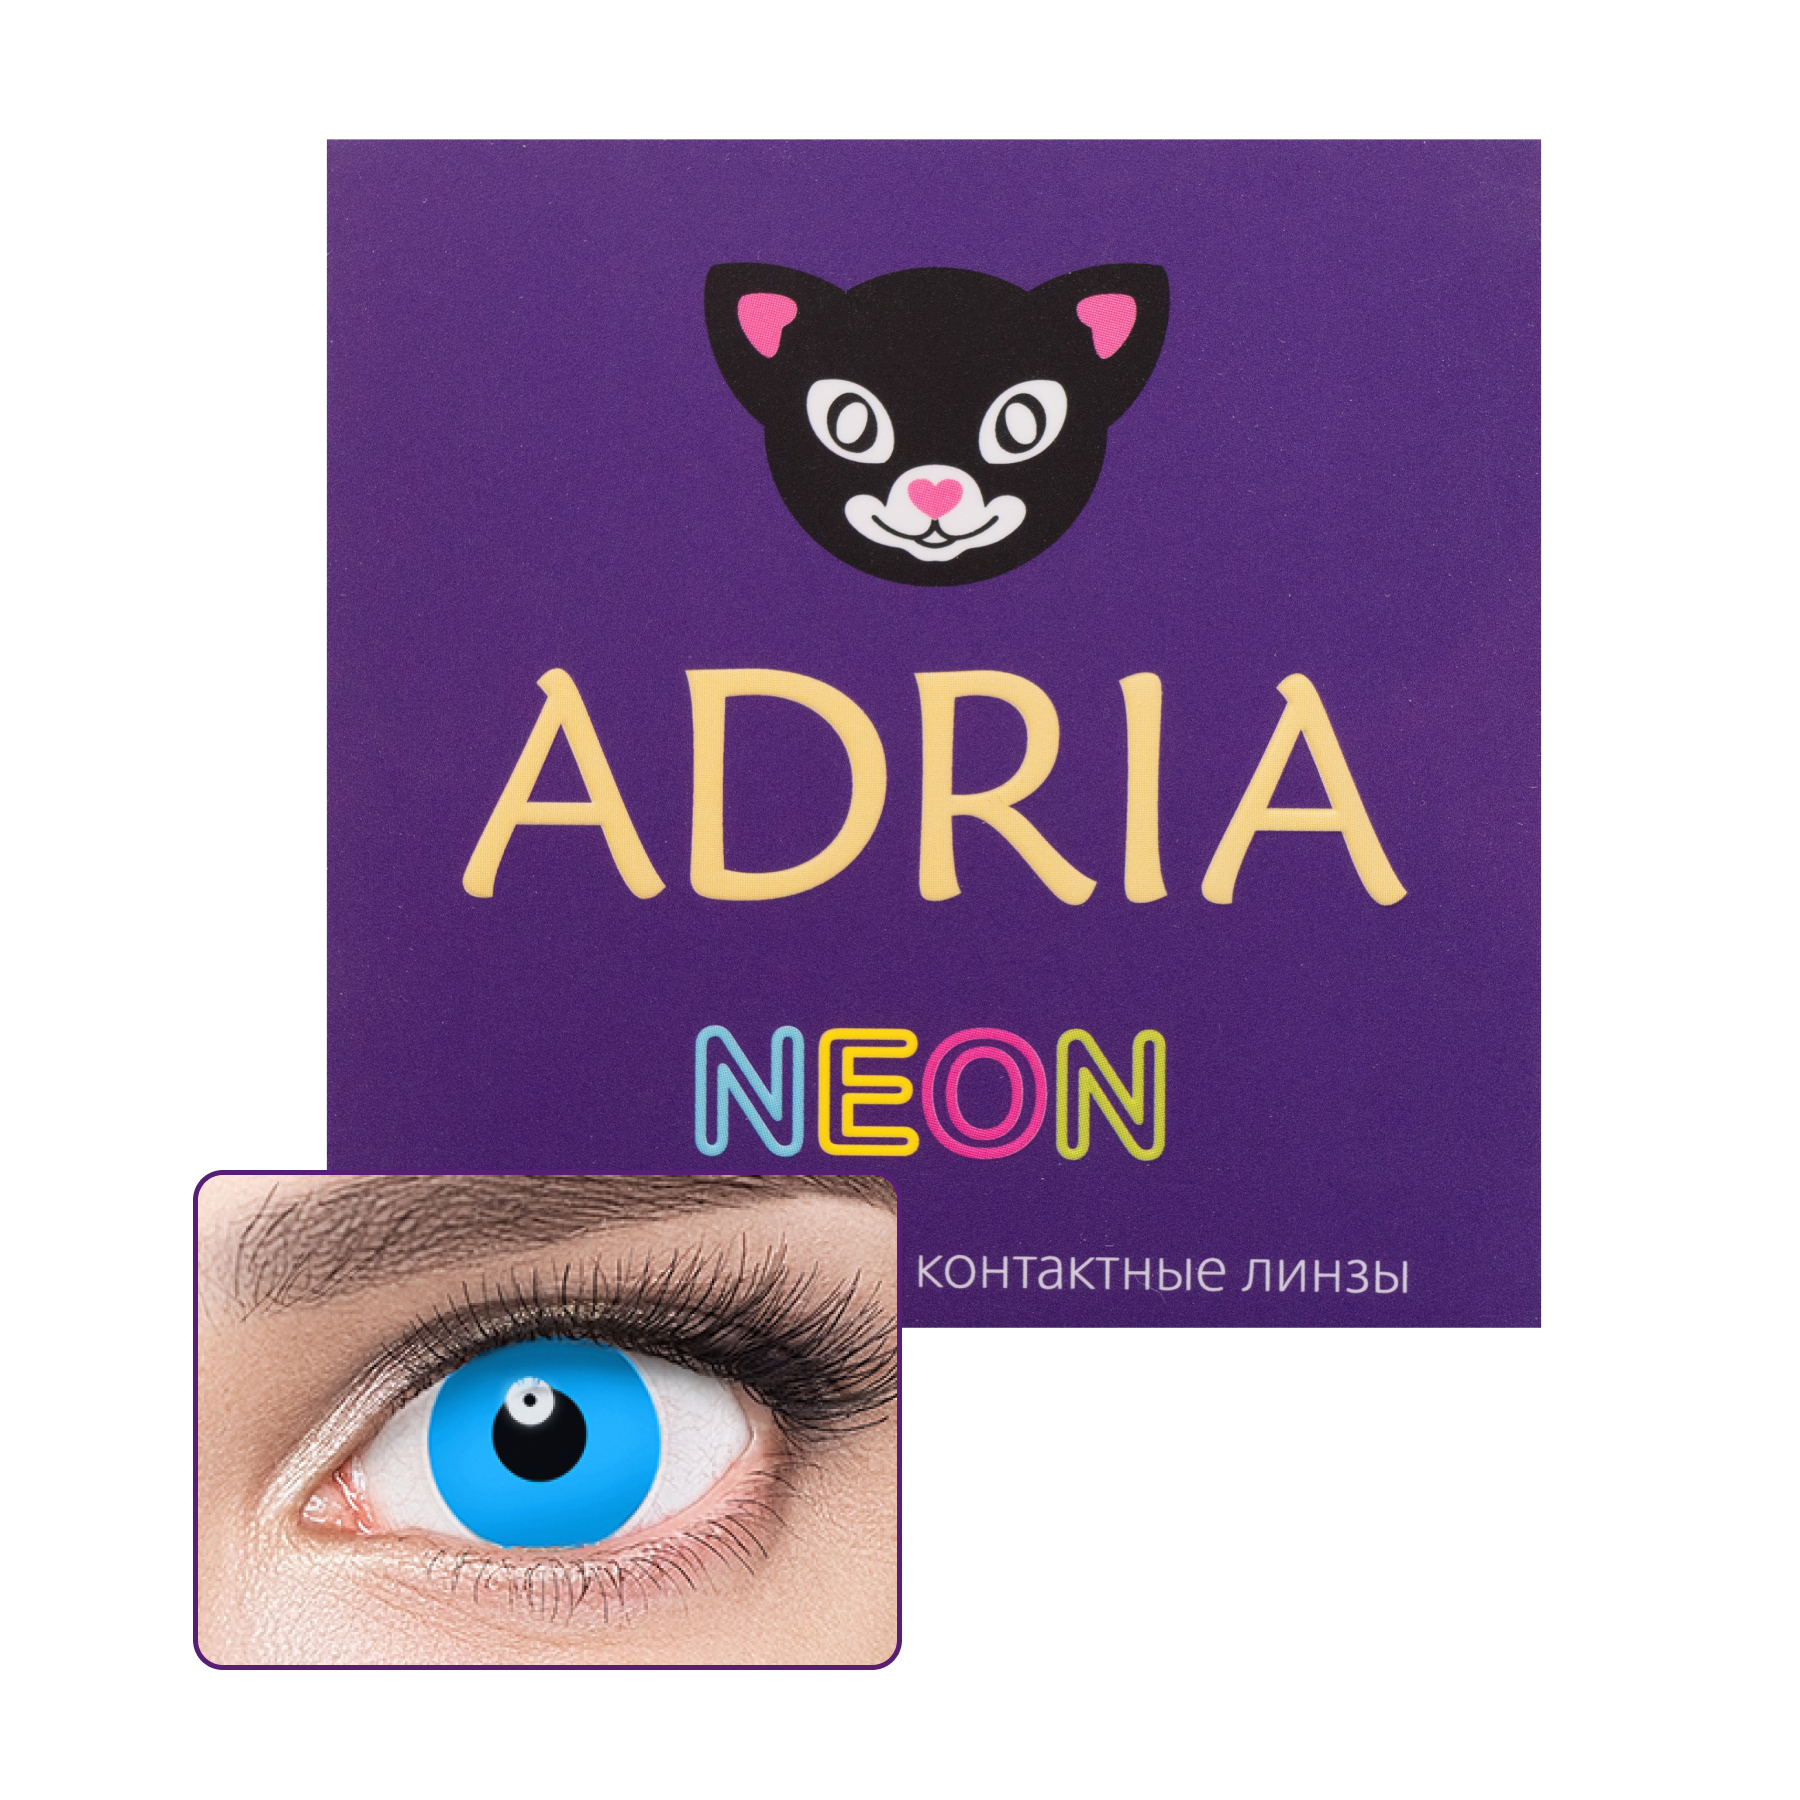 Купить Контактные линзы Adria NEON lenses 2 pack PWR -9, 00, R 8.6, Blue